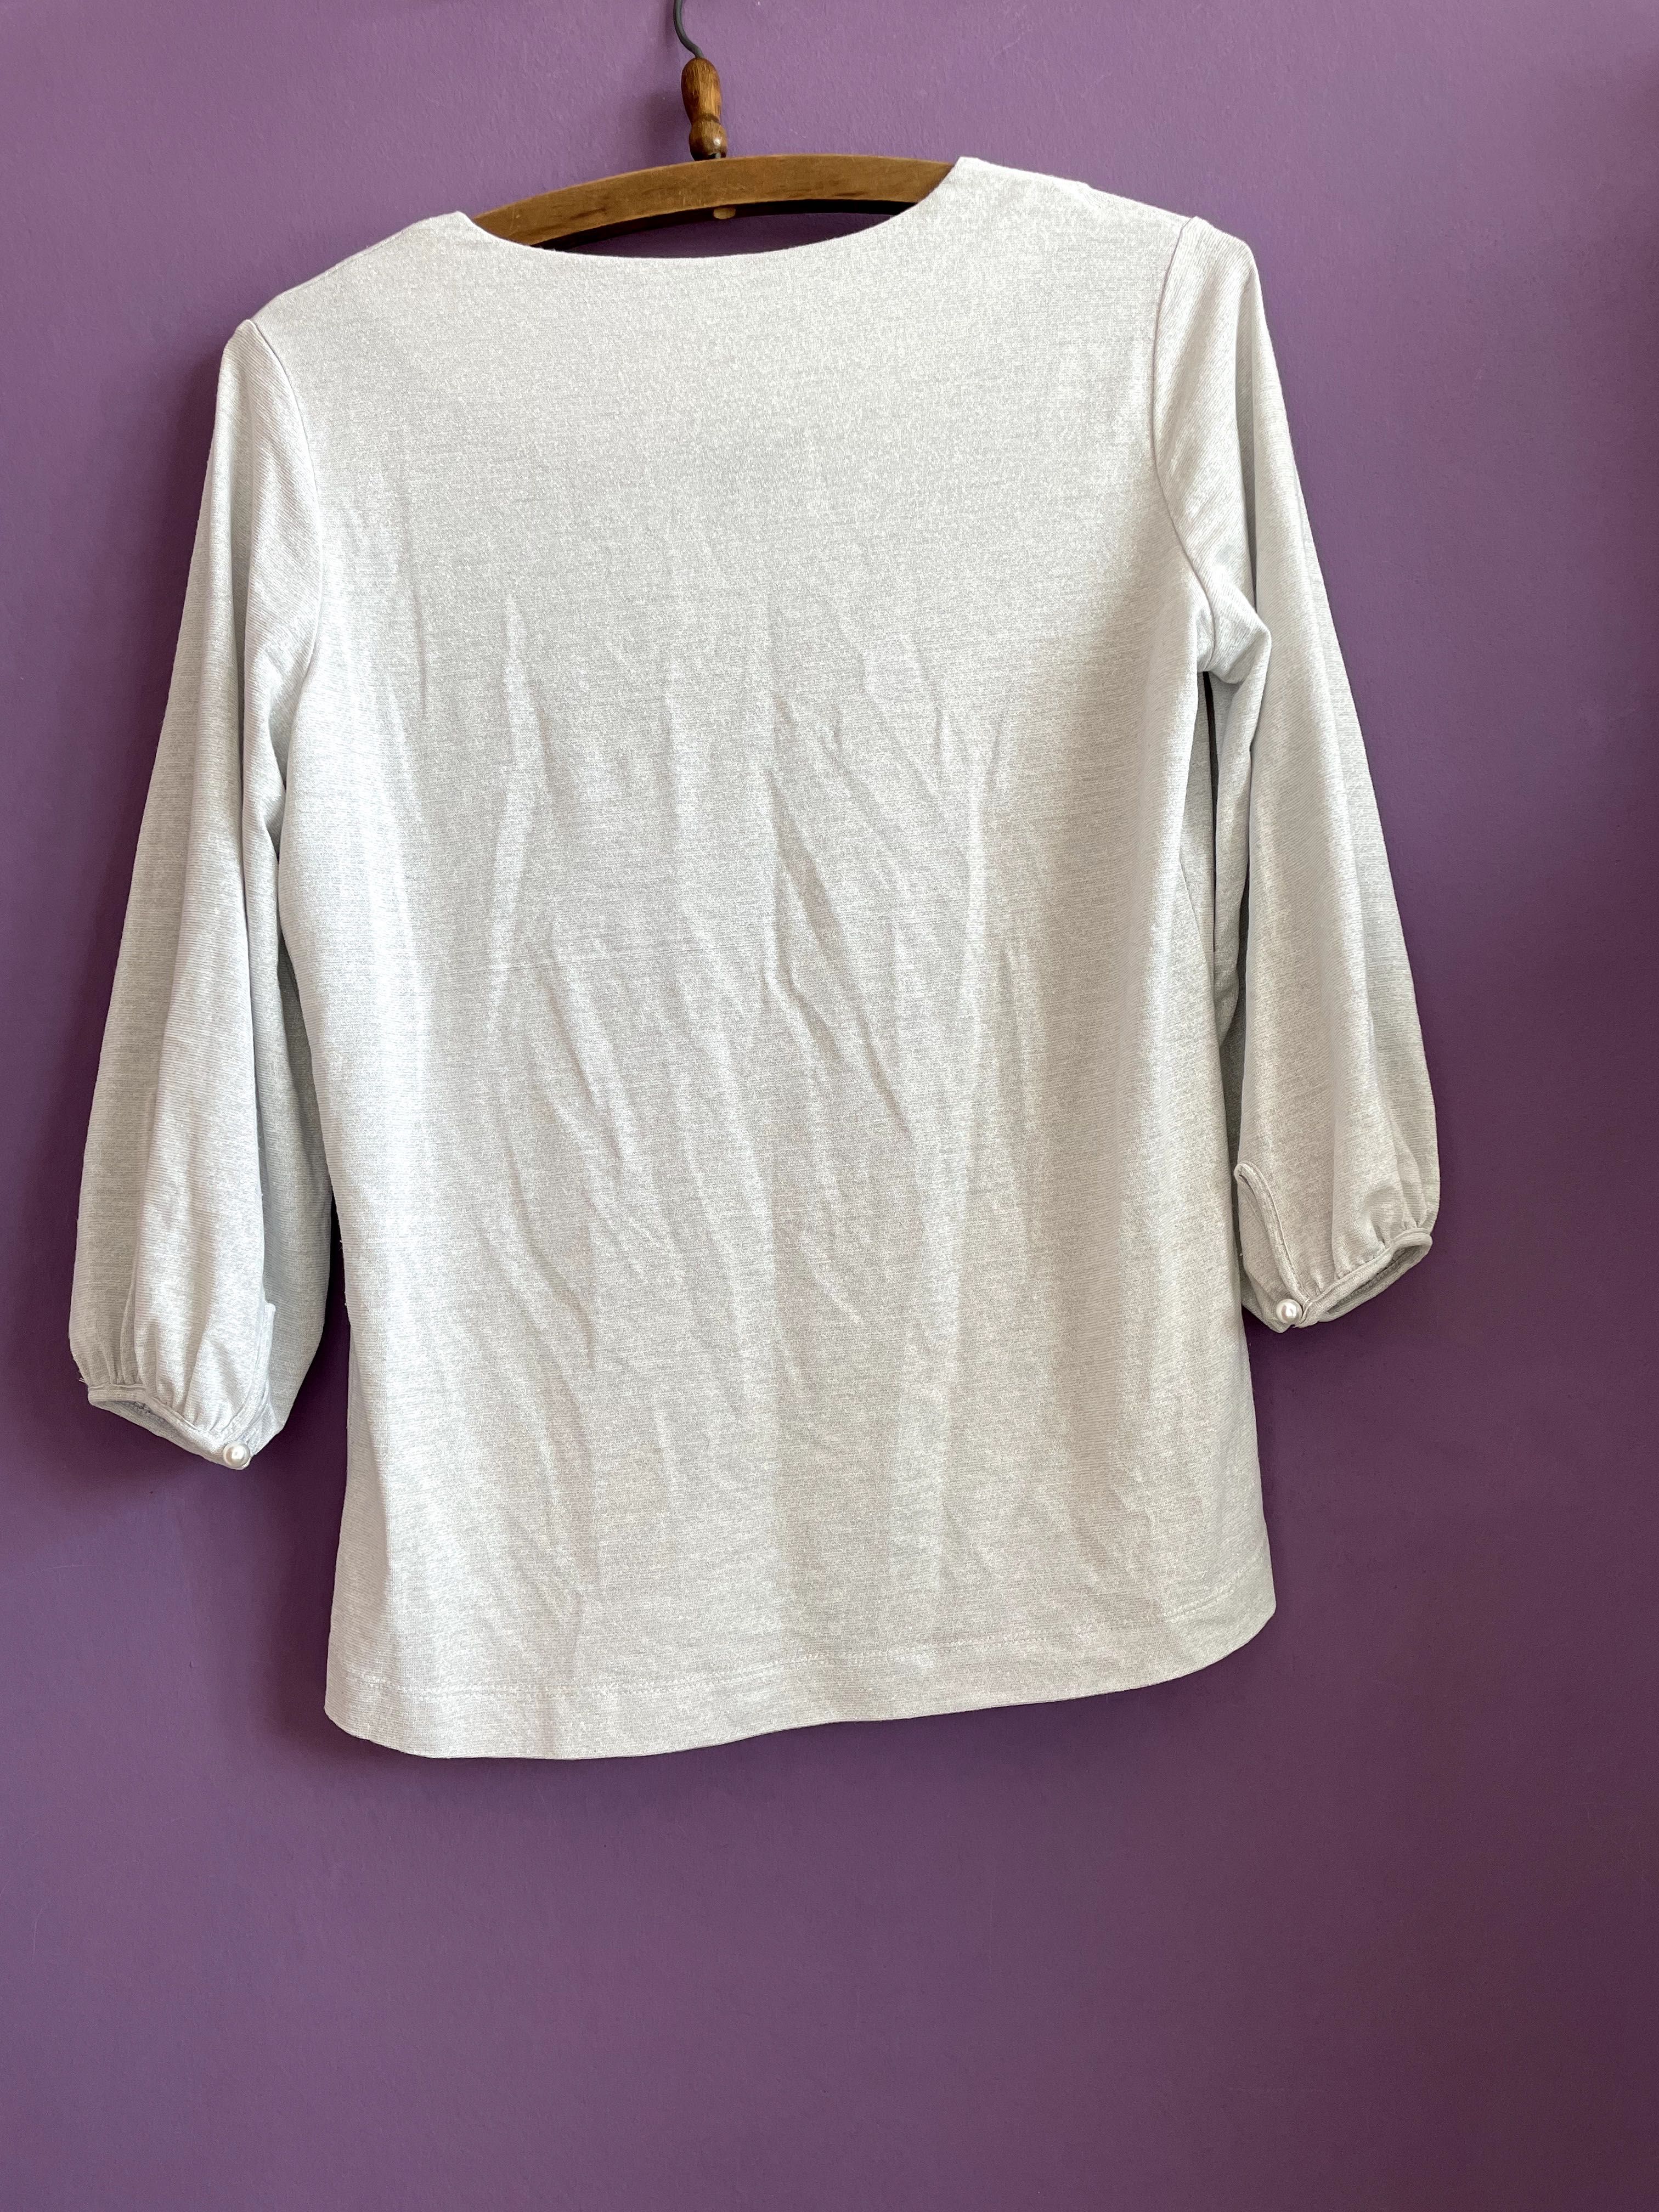 elegancka bluzka koszula błyszczącą metaliczna nitka quiosque 38 M